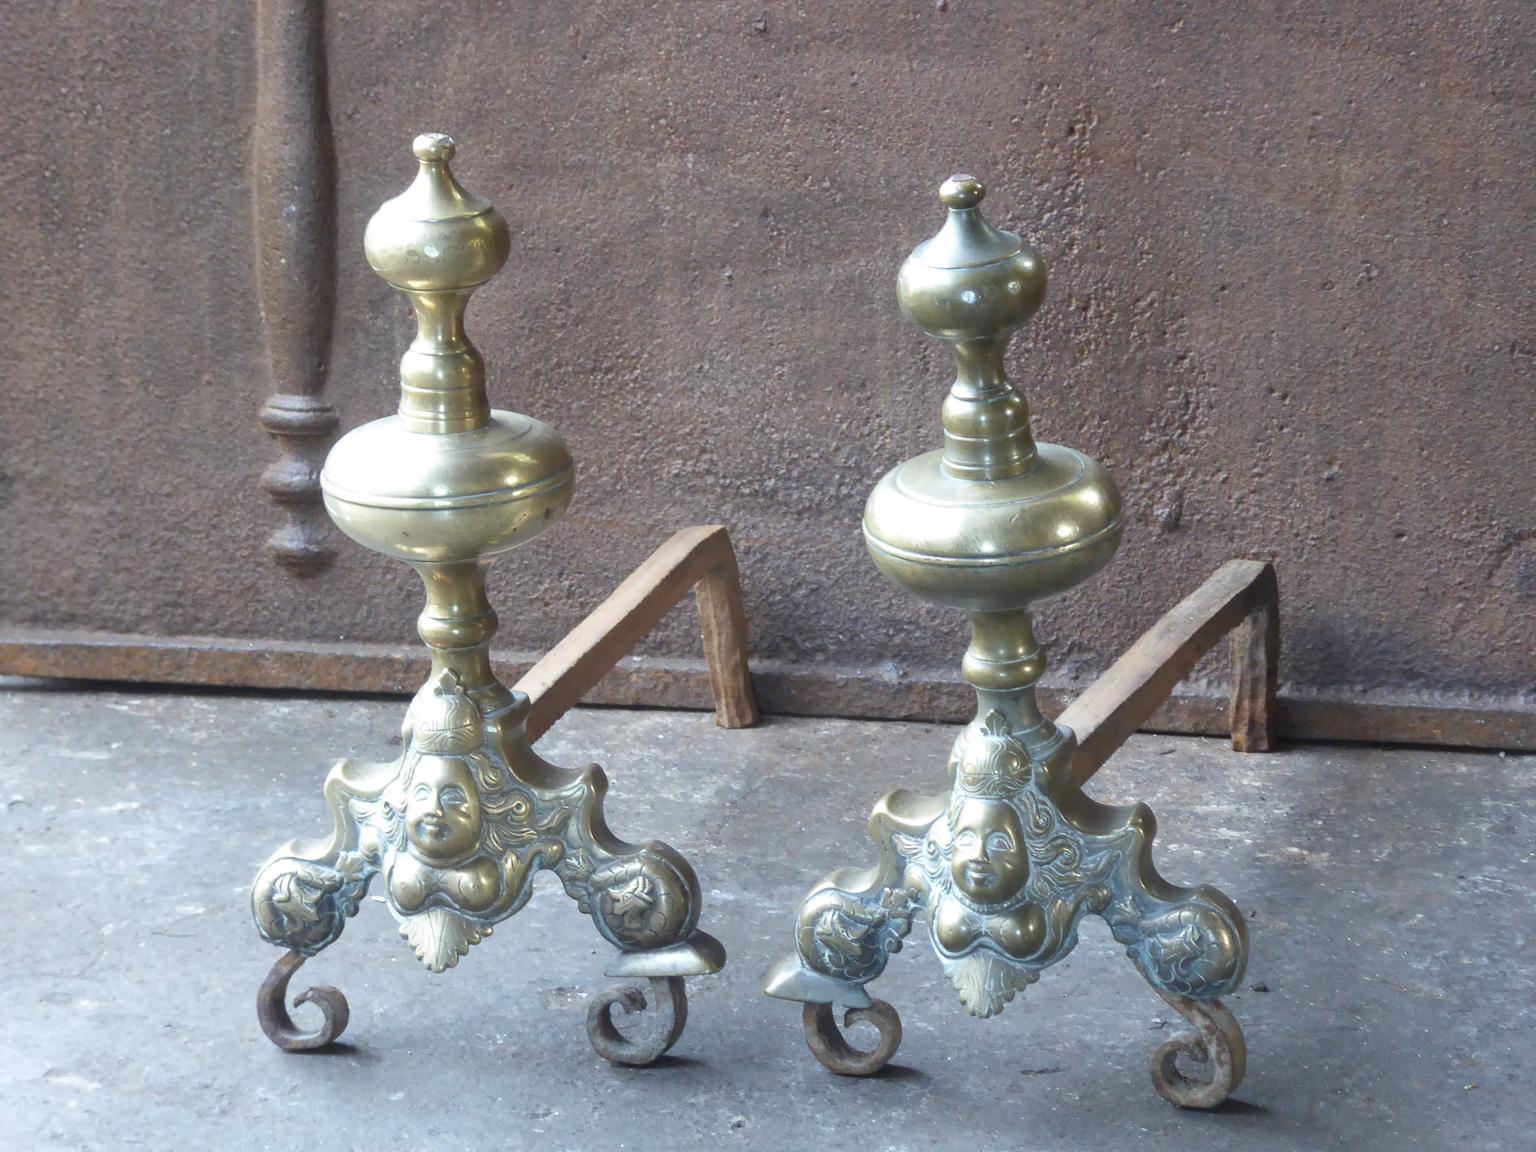 Französische Louis XIV-Andirons aus dem 17. Jahrhundert. Die Andirons sind aus Bronze und Schmiedeeisen gefertigt. Sie haben ein typisches Louis-XIV-Design, das im 17. Jahrhundert sehr beliebt war. In Frankreich nennt man sie marmousets, was so viel